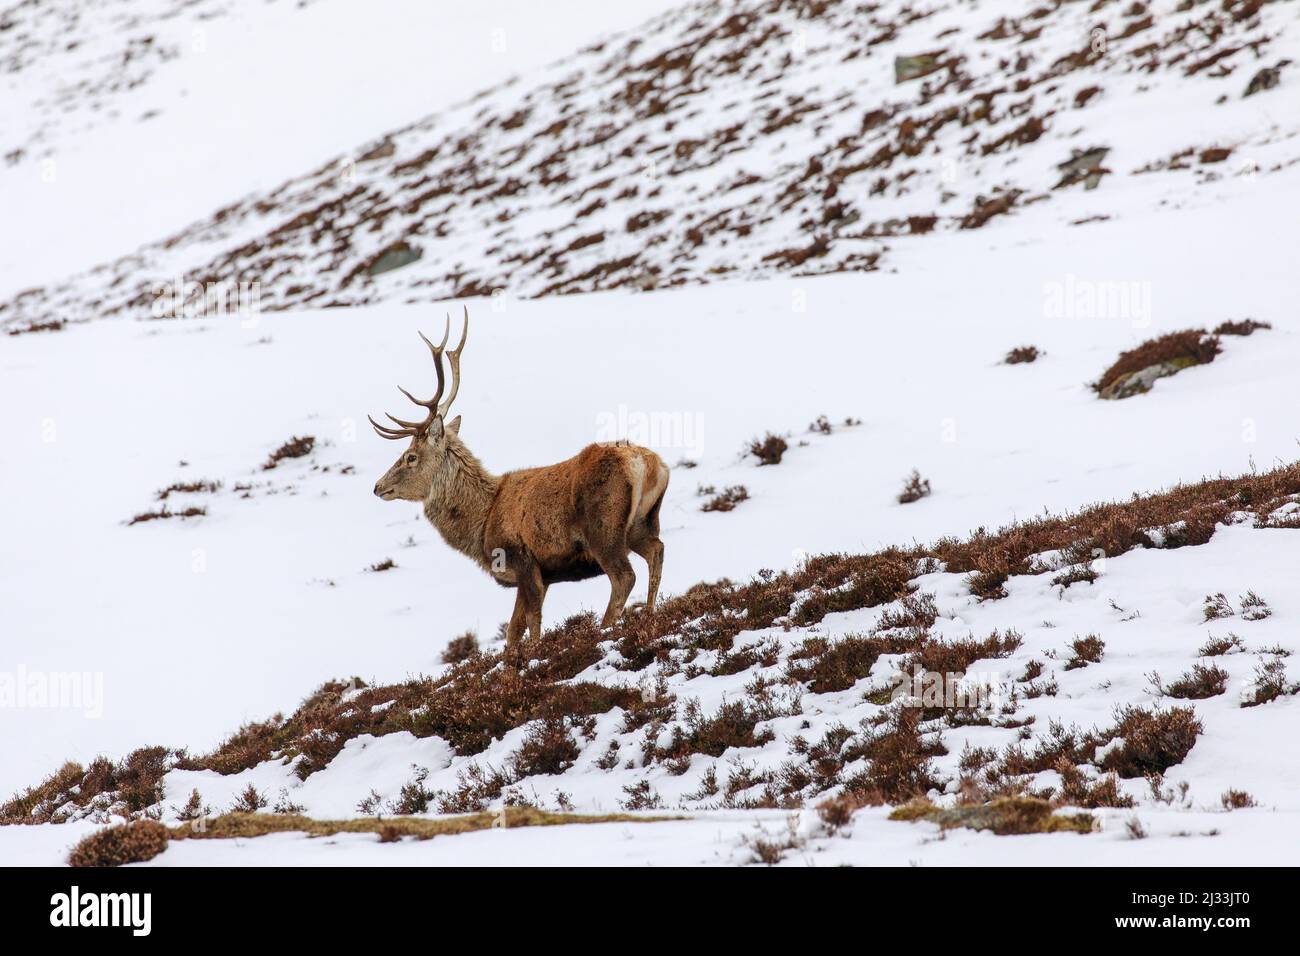 Red deer, antlers, stag in snow, Royal Deeside, Braemar, Aberdeenshire, Scotland, UK Stock Photo